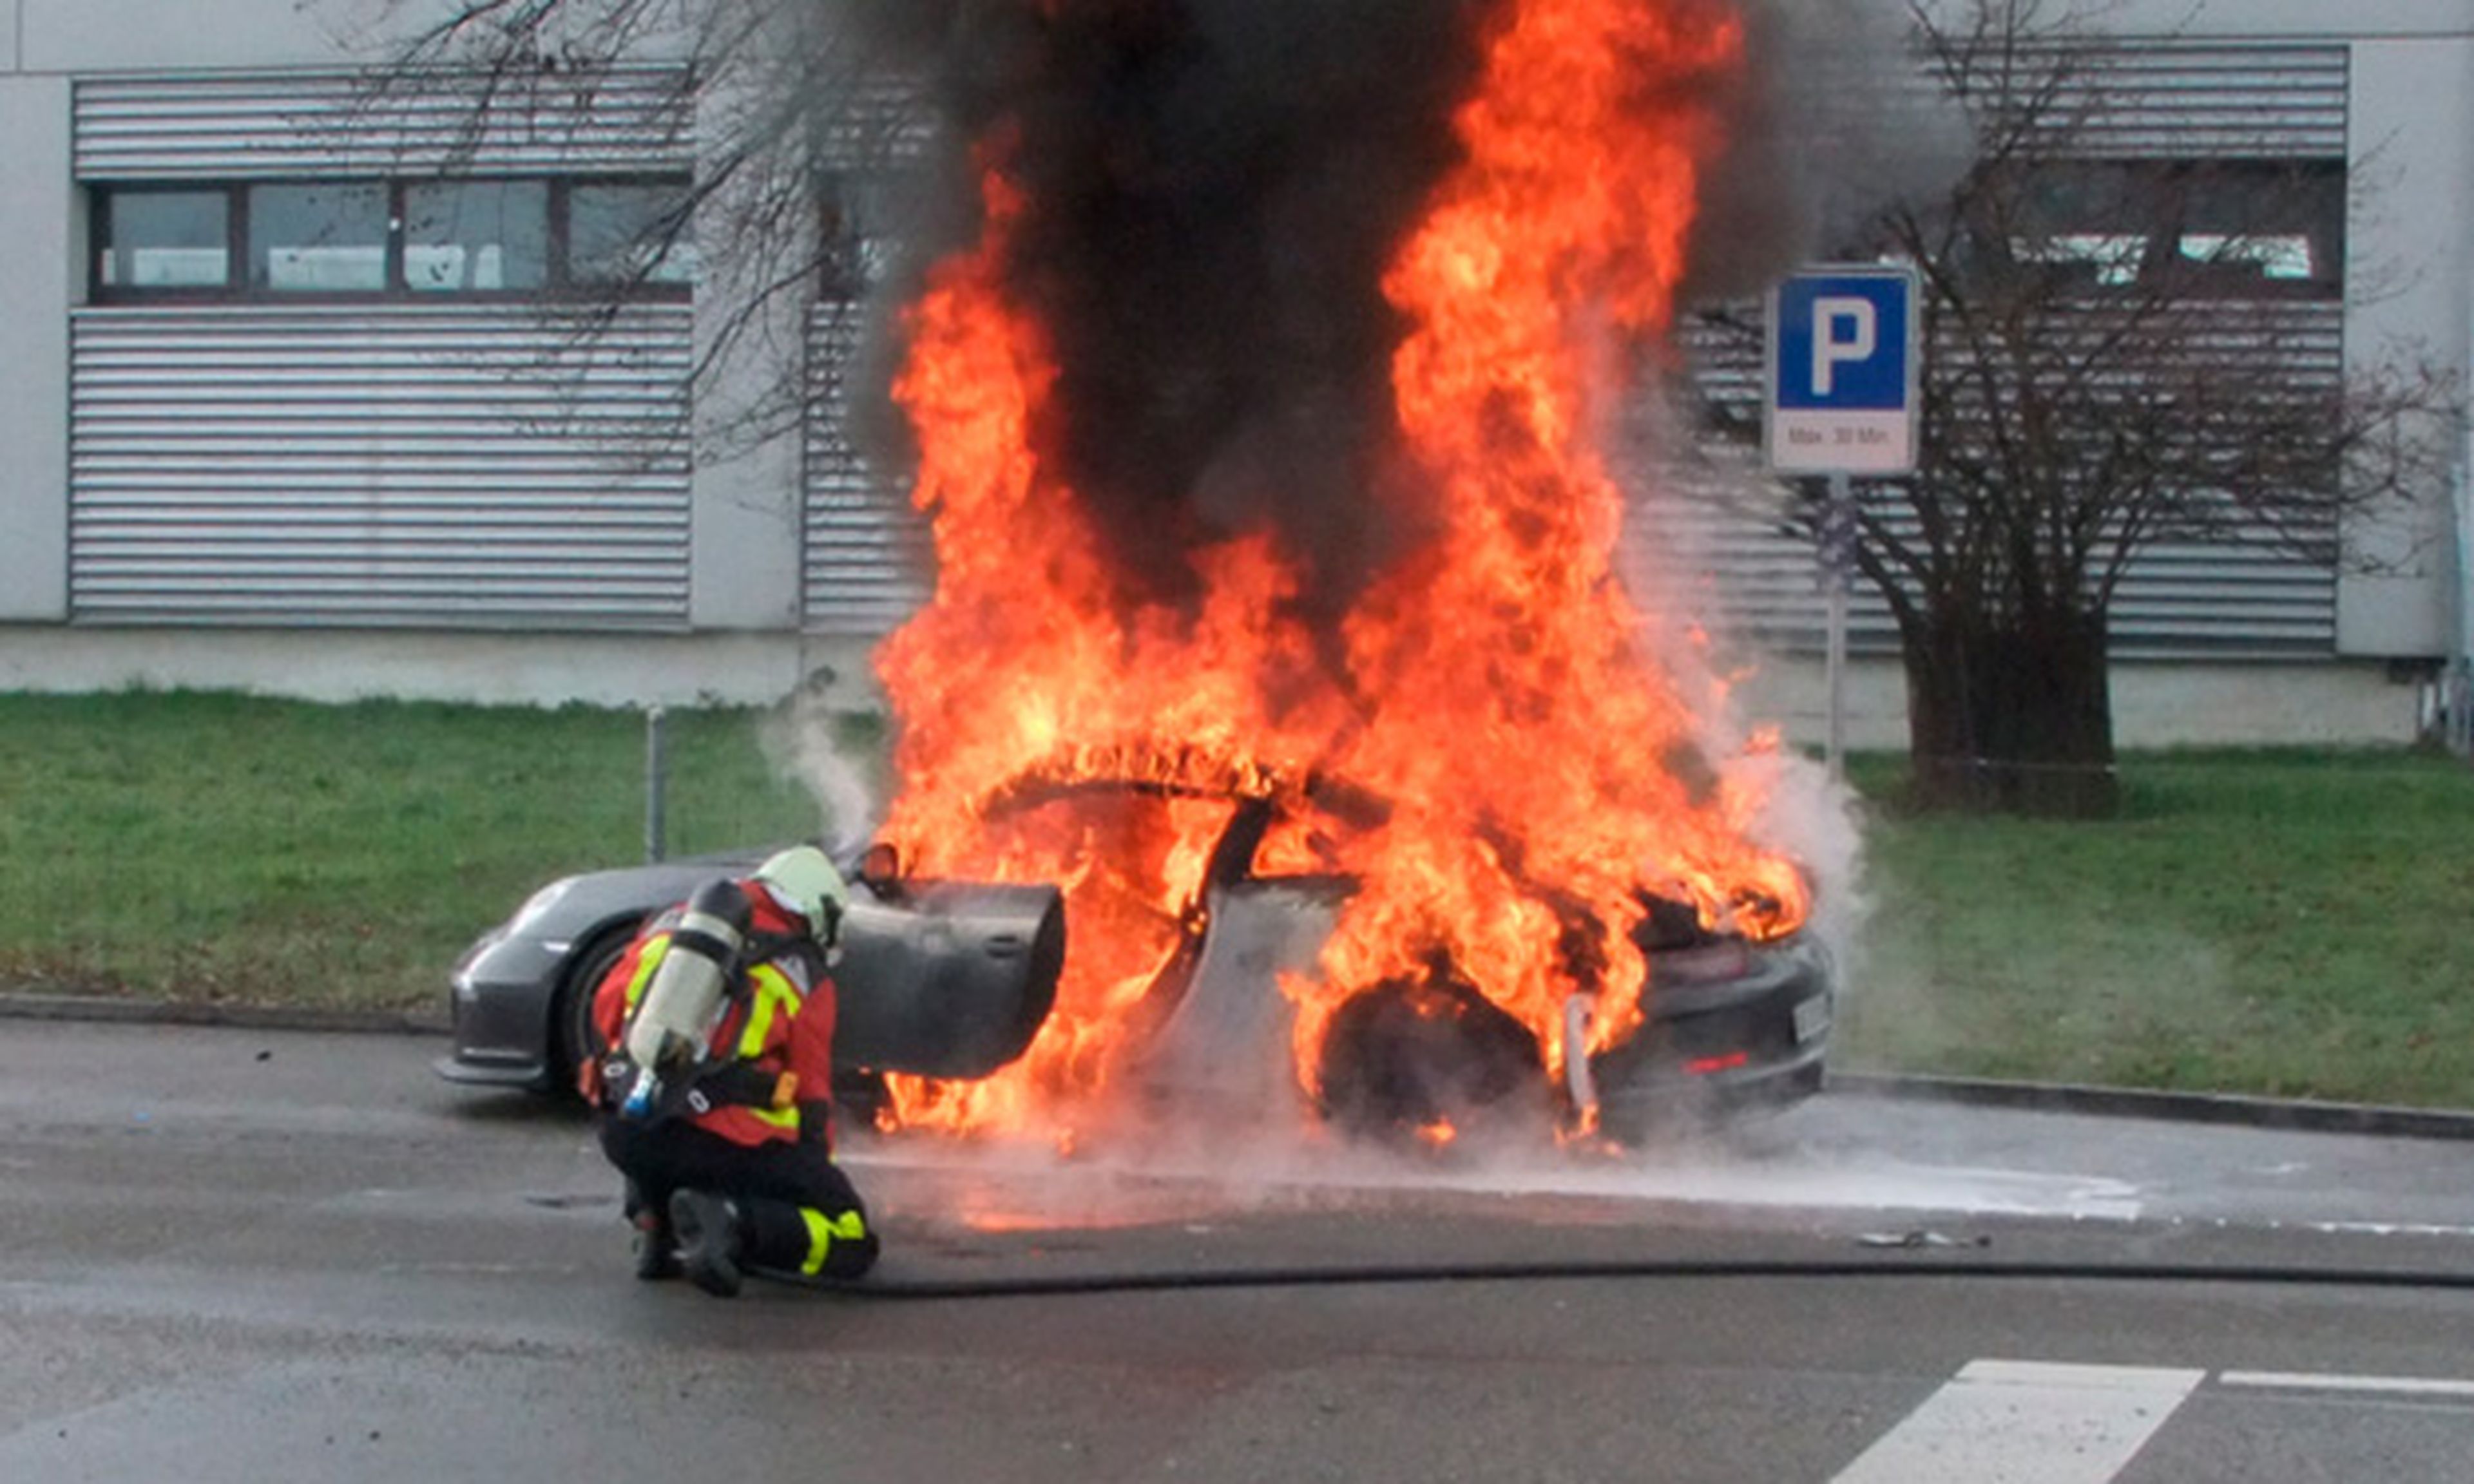 Venta del 911 GT3 podría pararse por incendio de una unidad